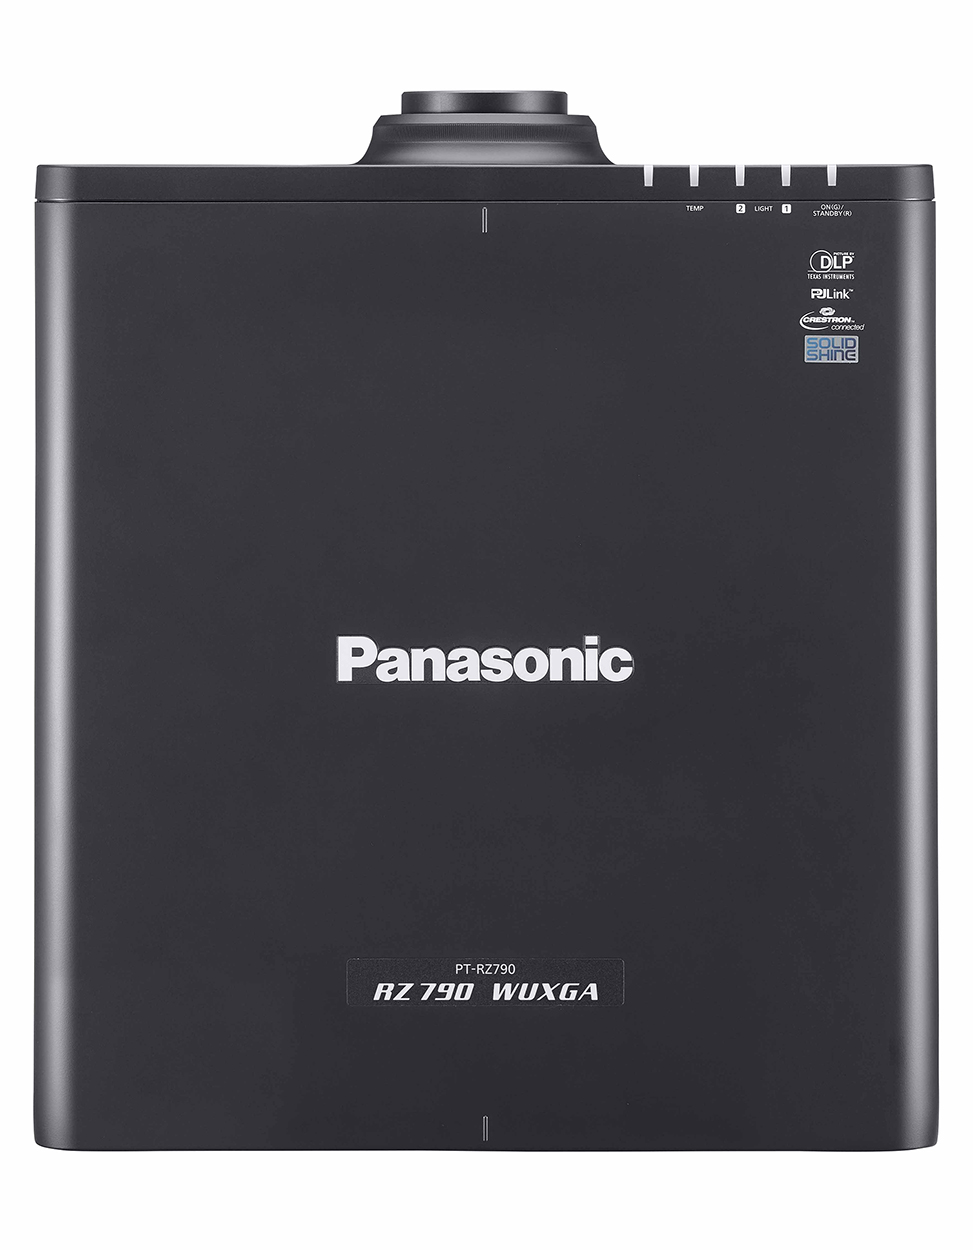 Panasonic PT-RZ790